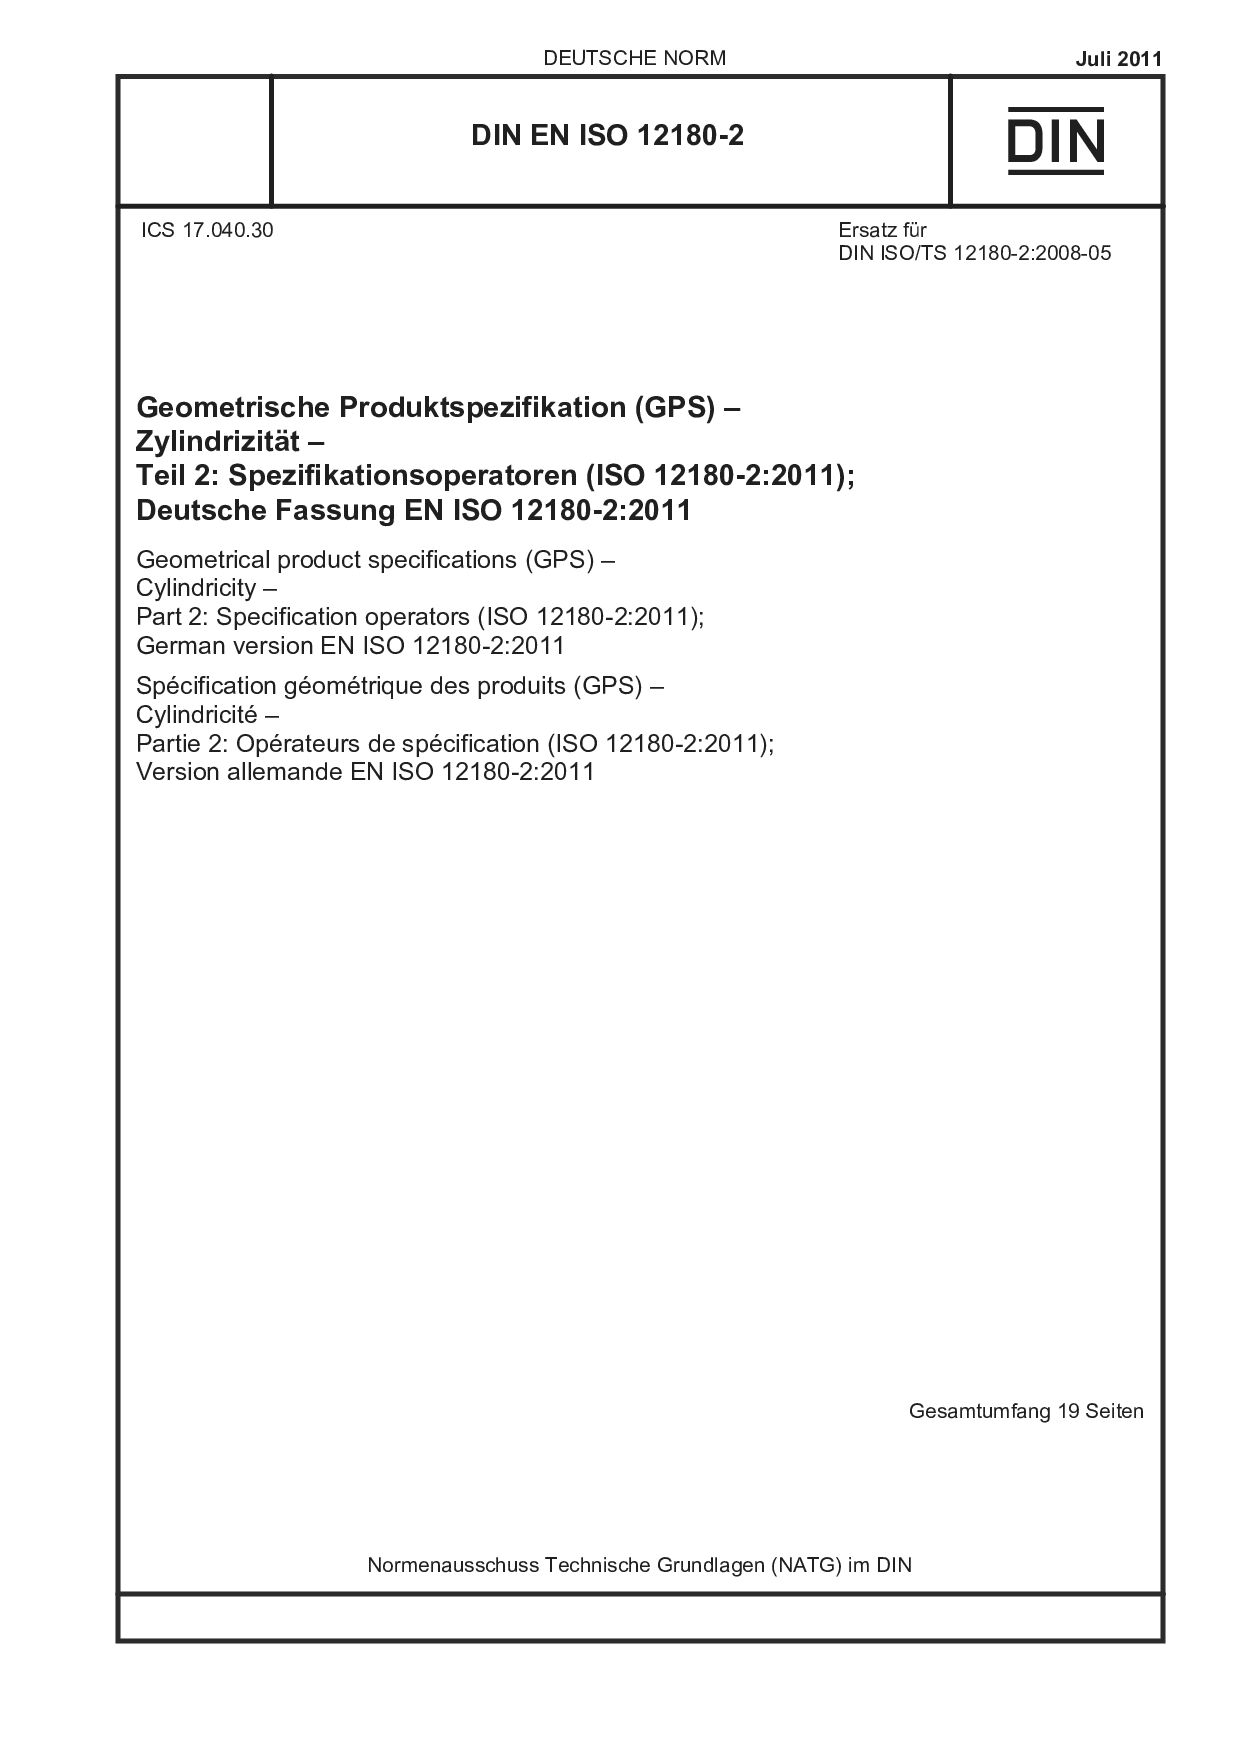 DIN EN ISO 12180-2:2011封面图